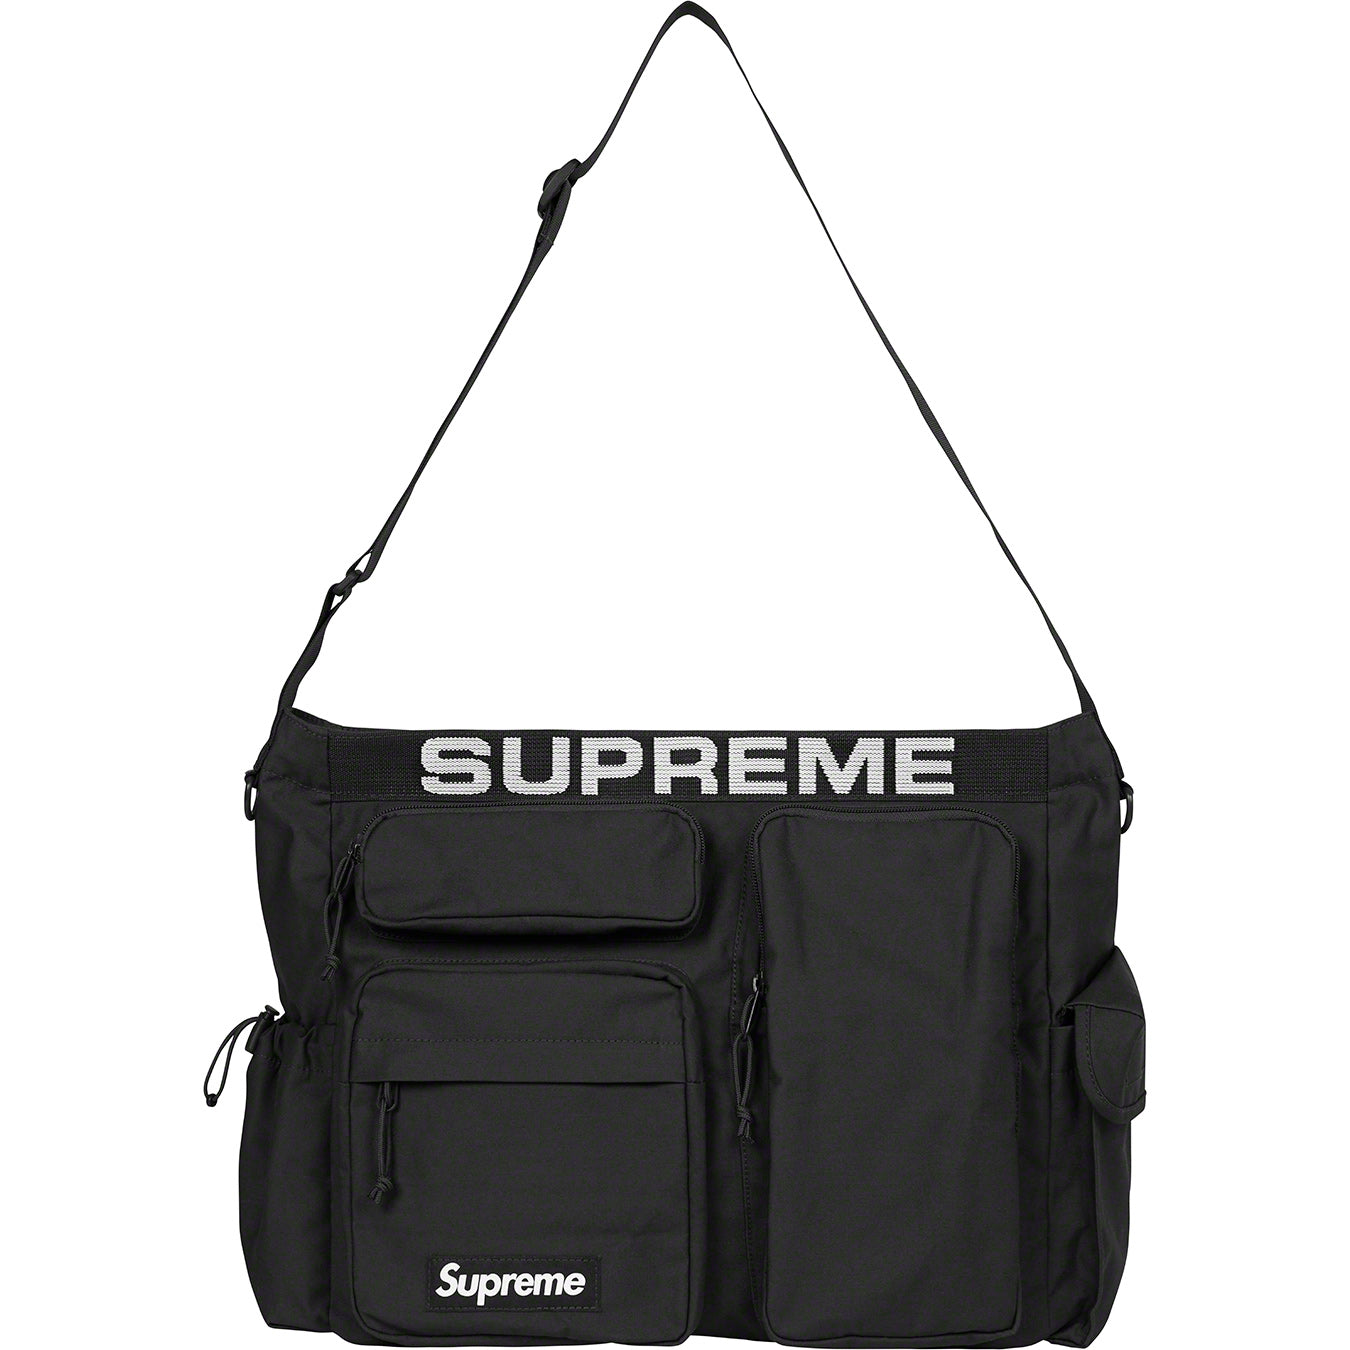 lv supreme messenger bag